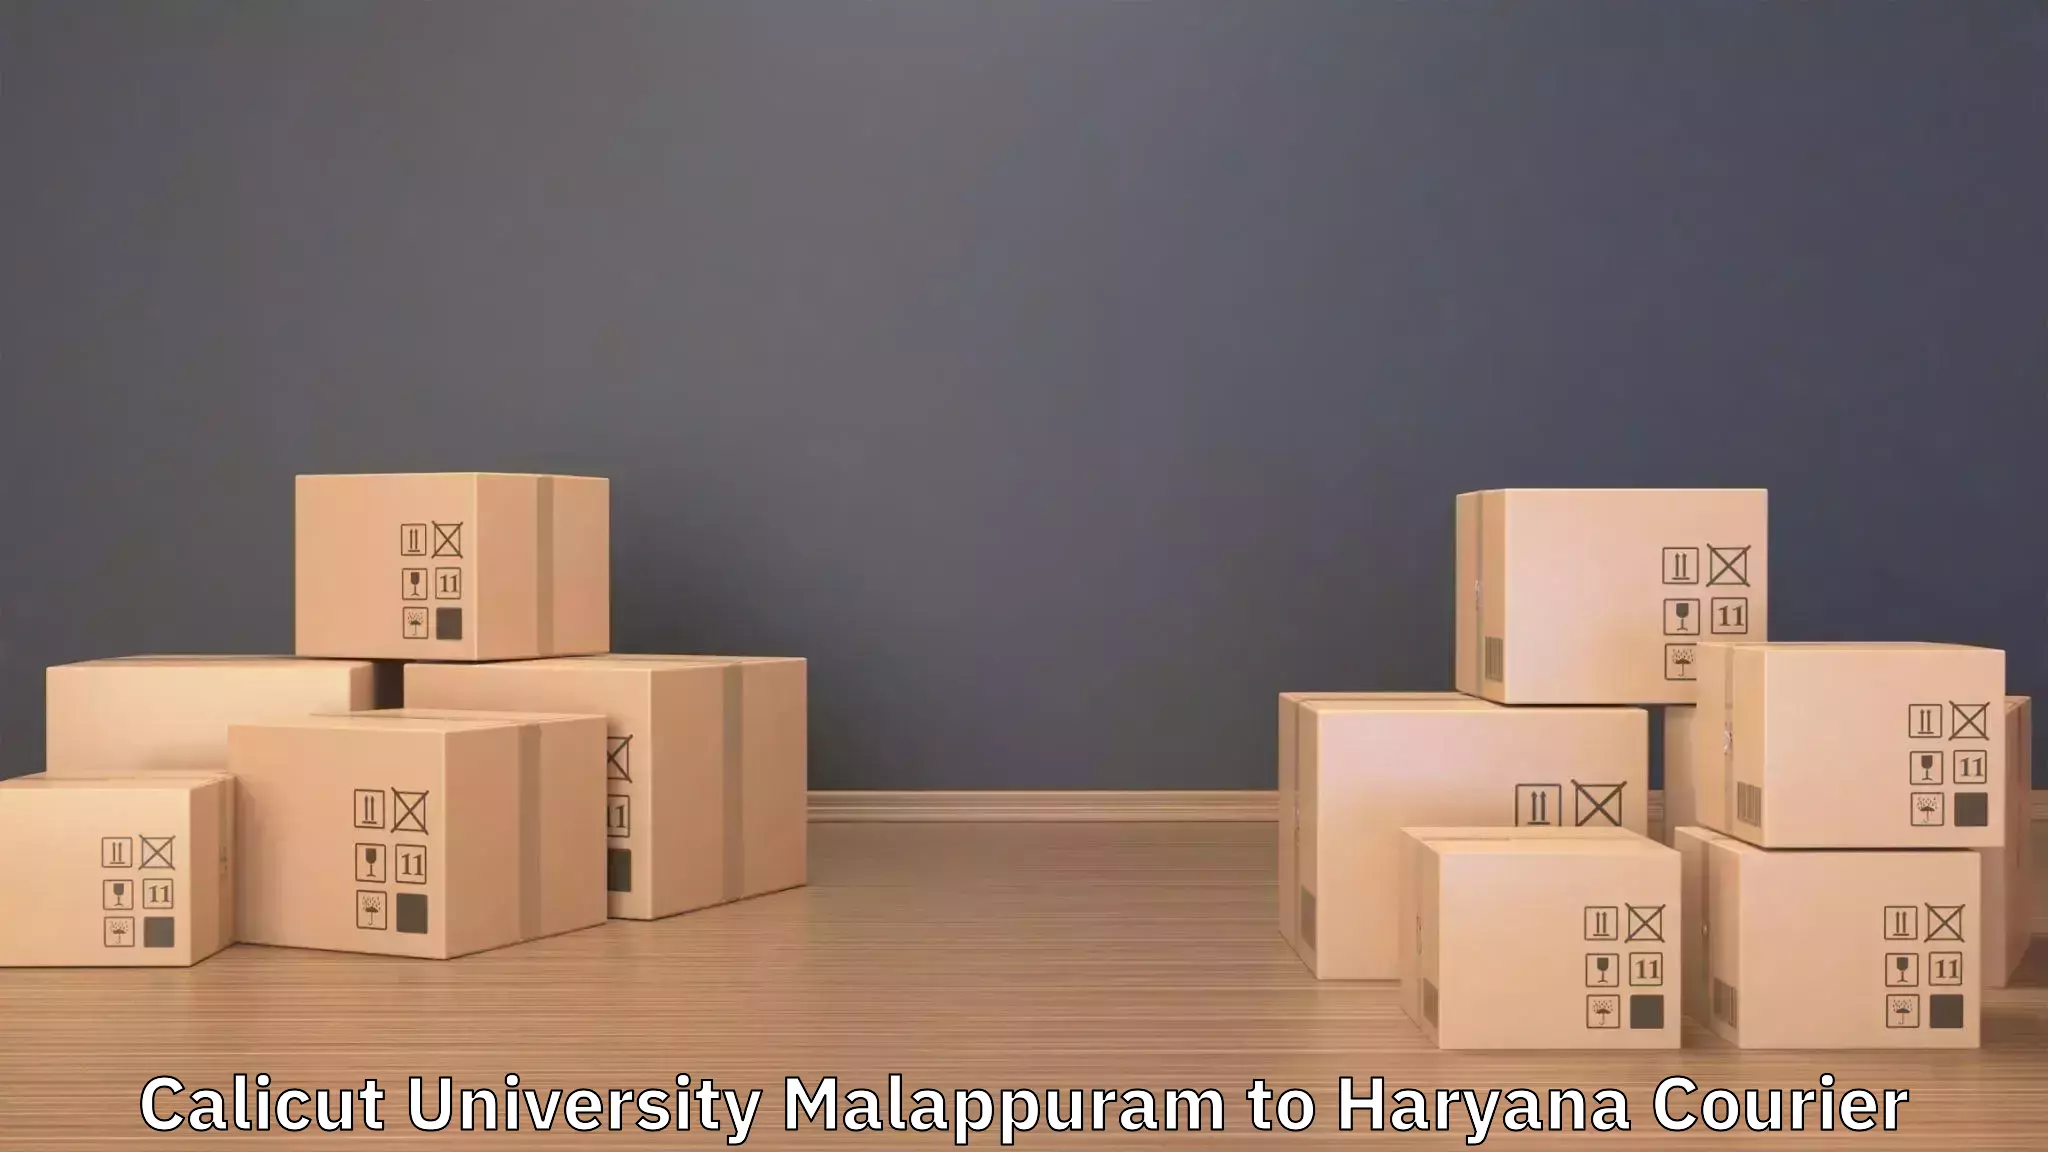 Door-to-door relocation services Calicut University Malappuram to Bilaspur Haryana